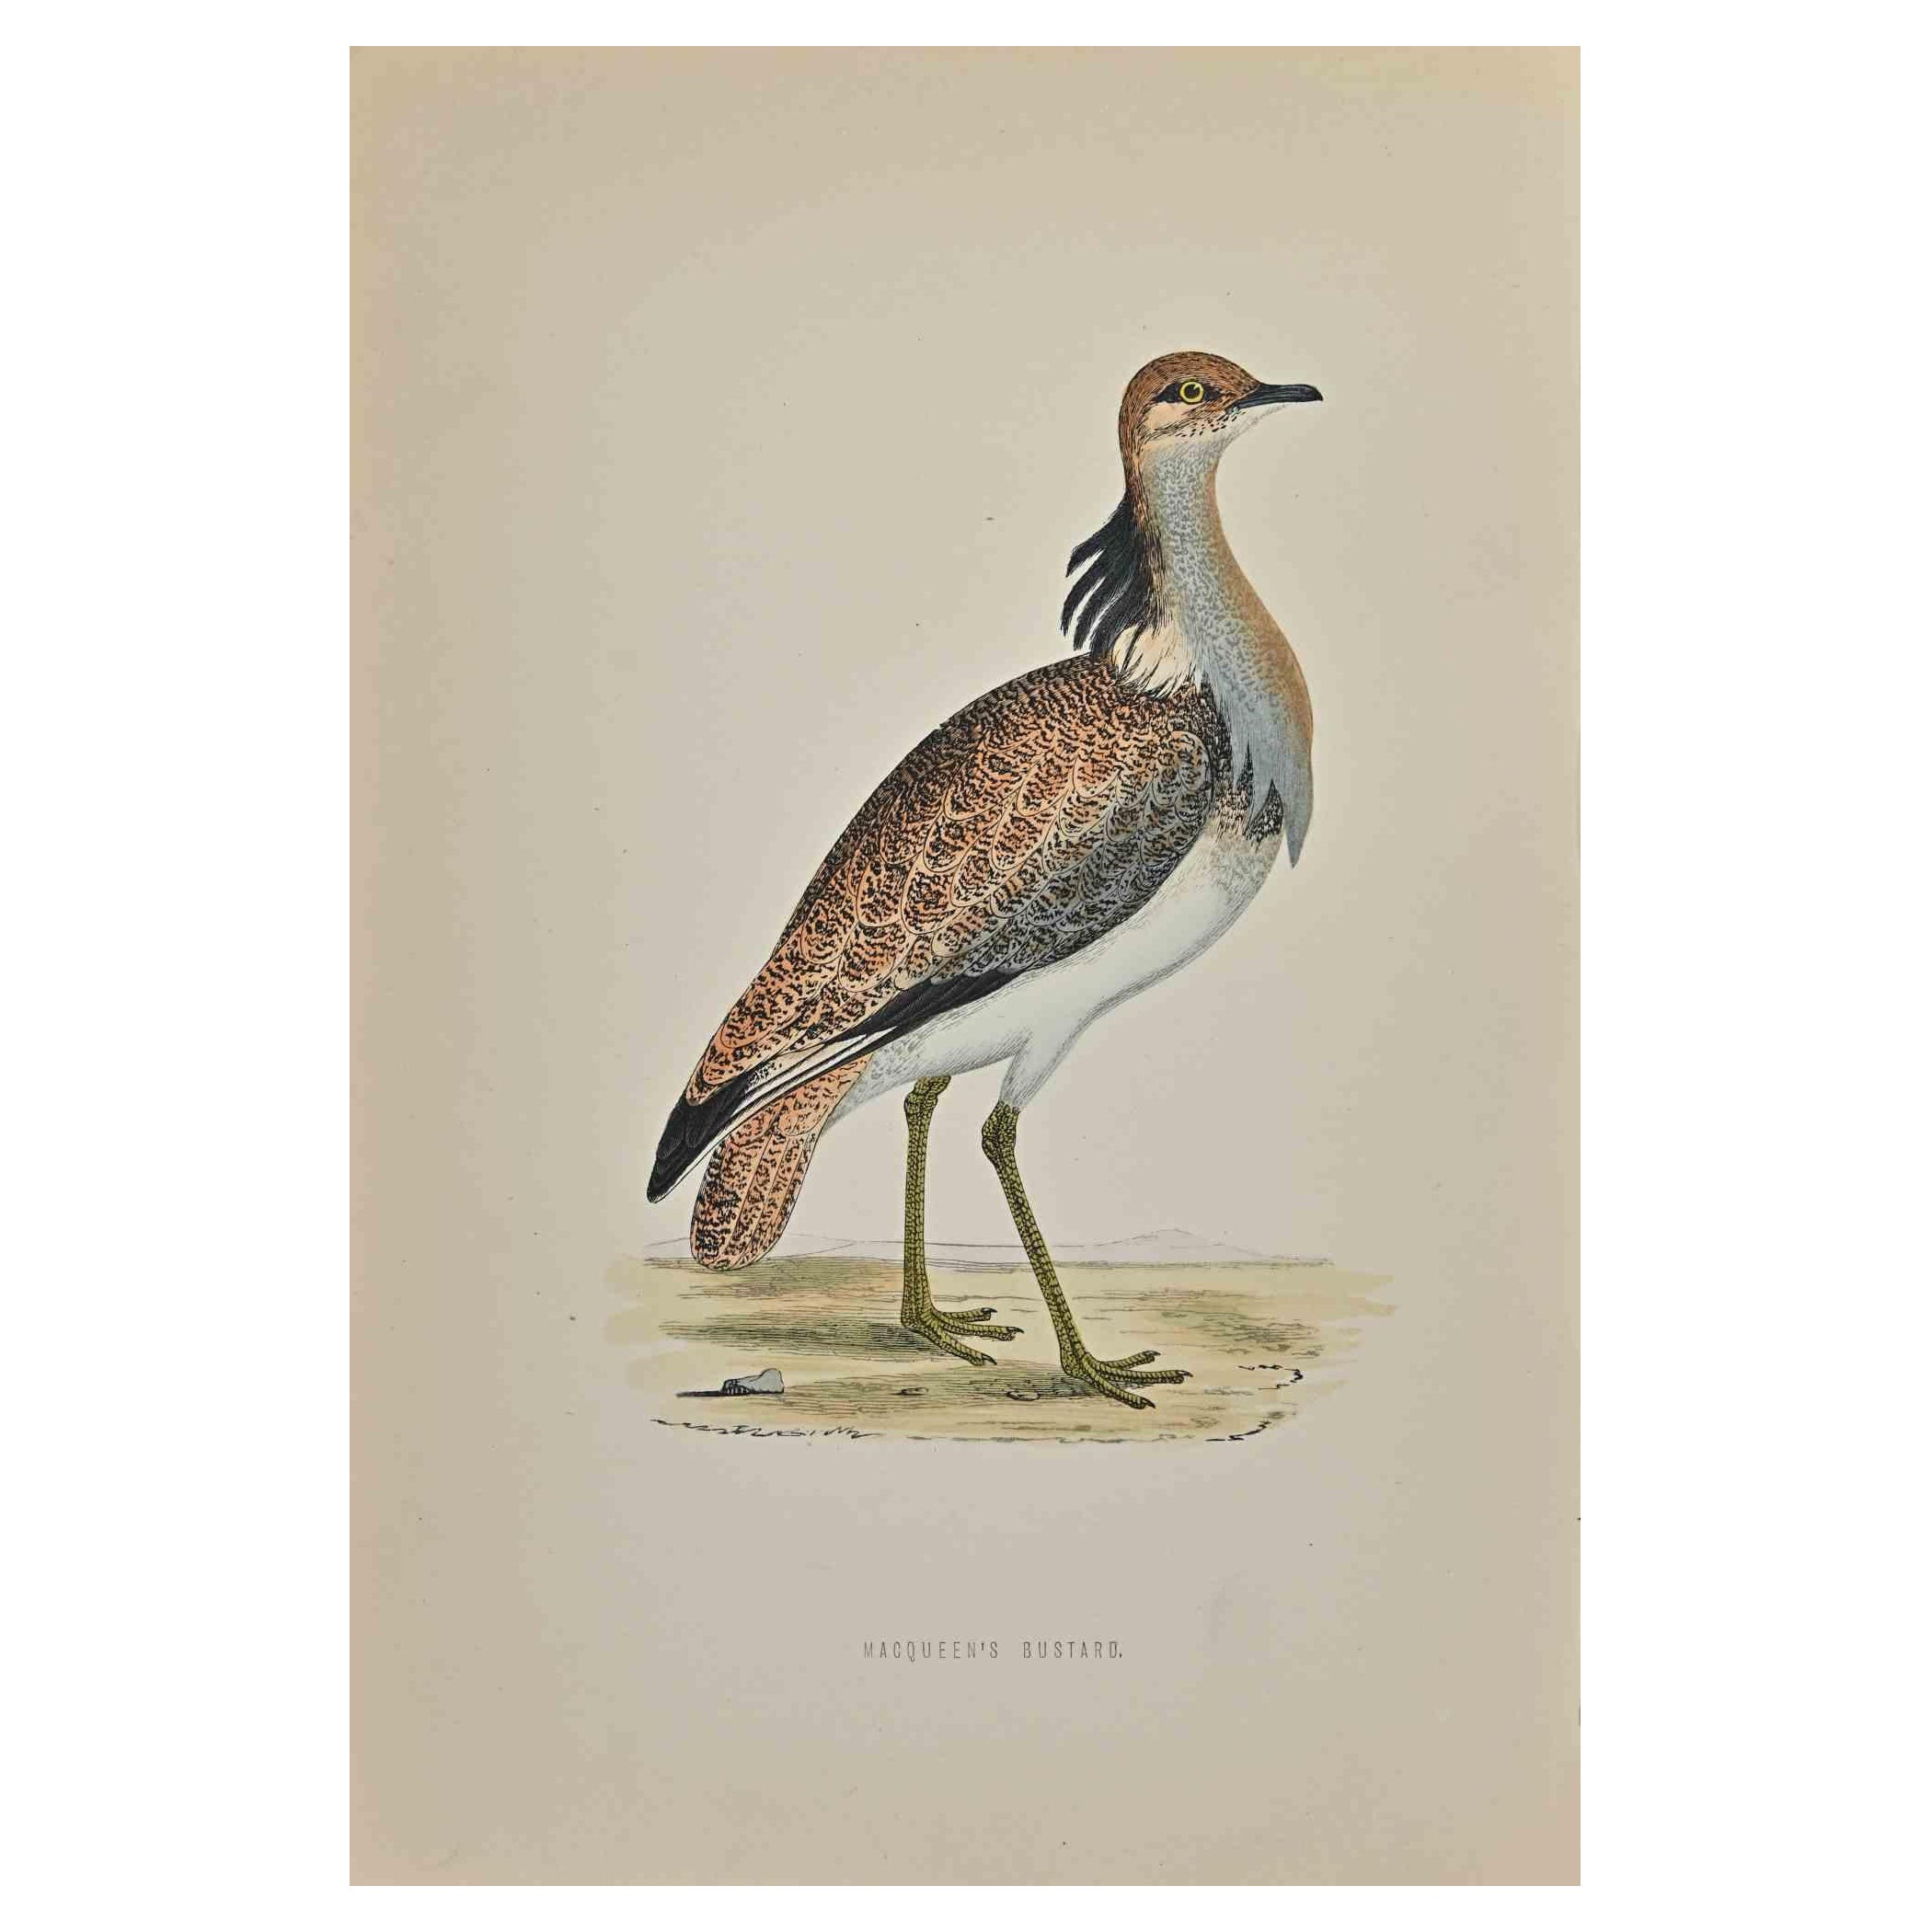 Macqueen's Bustard ist ein modernes Kunstwerk, das 1870 von dem britischen Künstler Alexander Francis Lydon (1836-1917) geschaffen wurde. 

Holzschnitt, handkoloriert, veröffentlicht von London, Bell & Sons, 1870.  Name des Vogels in der Platte